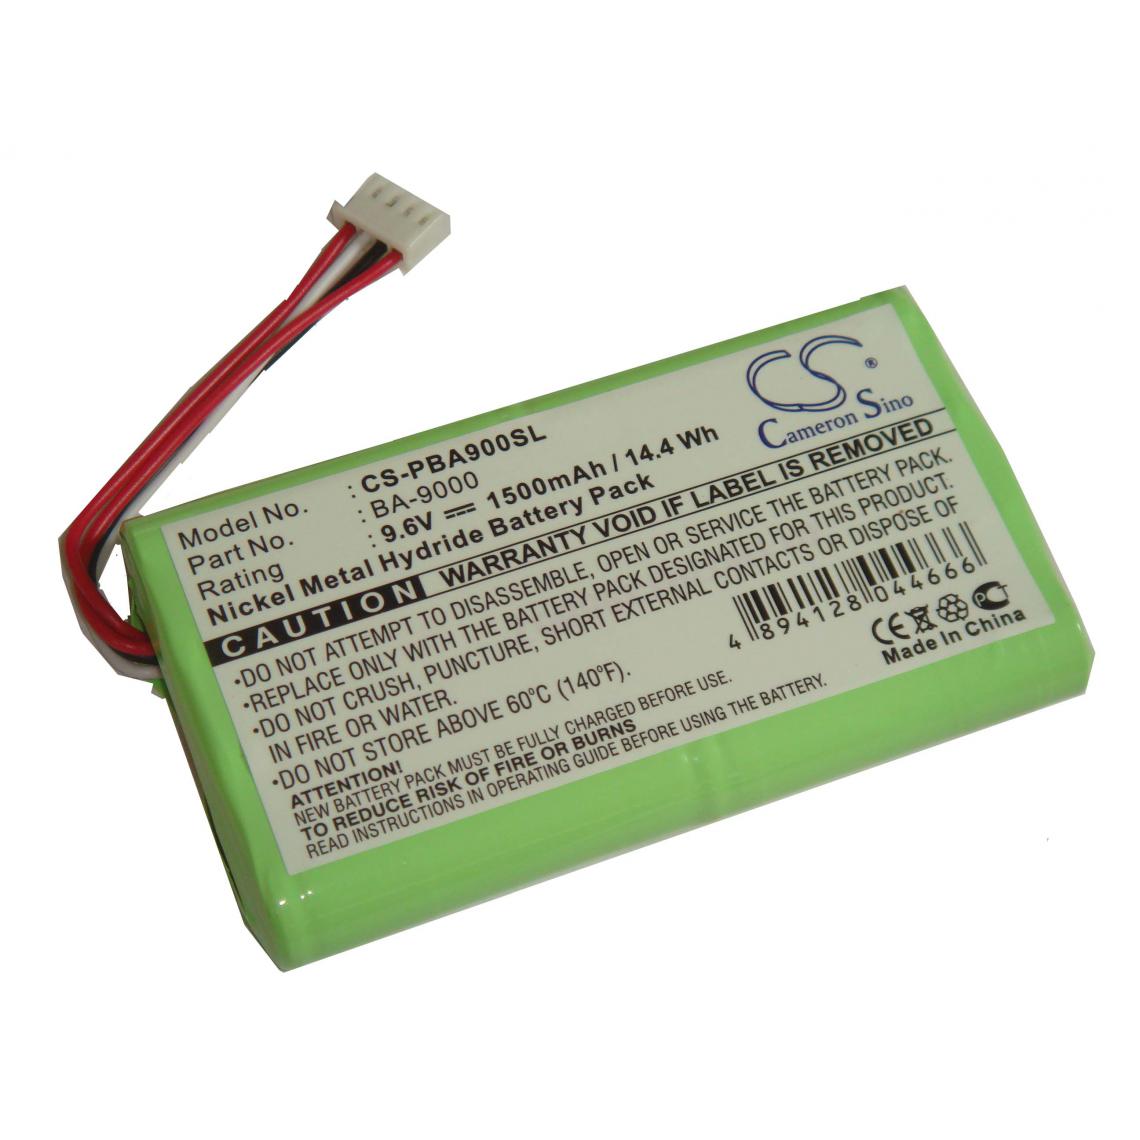 Vhbw - vhbw batterie Ni-MH 1500mAh (9.6V) compatible avec imprimante Brother PT-9500, PT-9500pc, PT-9600 remplace BA-9000, BA9000. - Imprimante Jet d'encre